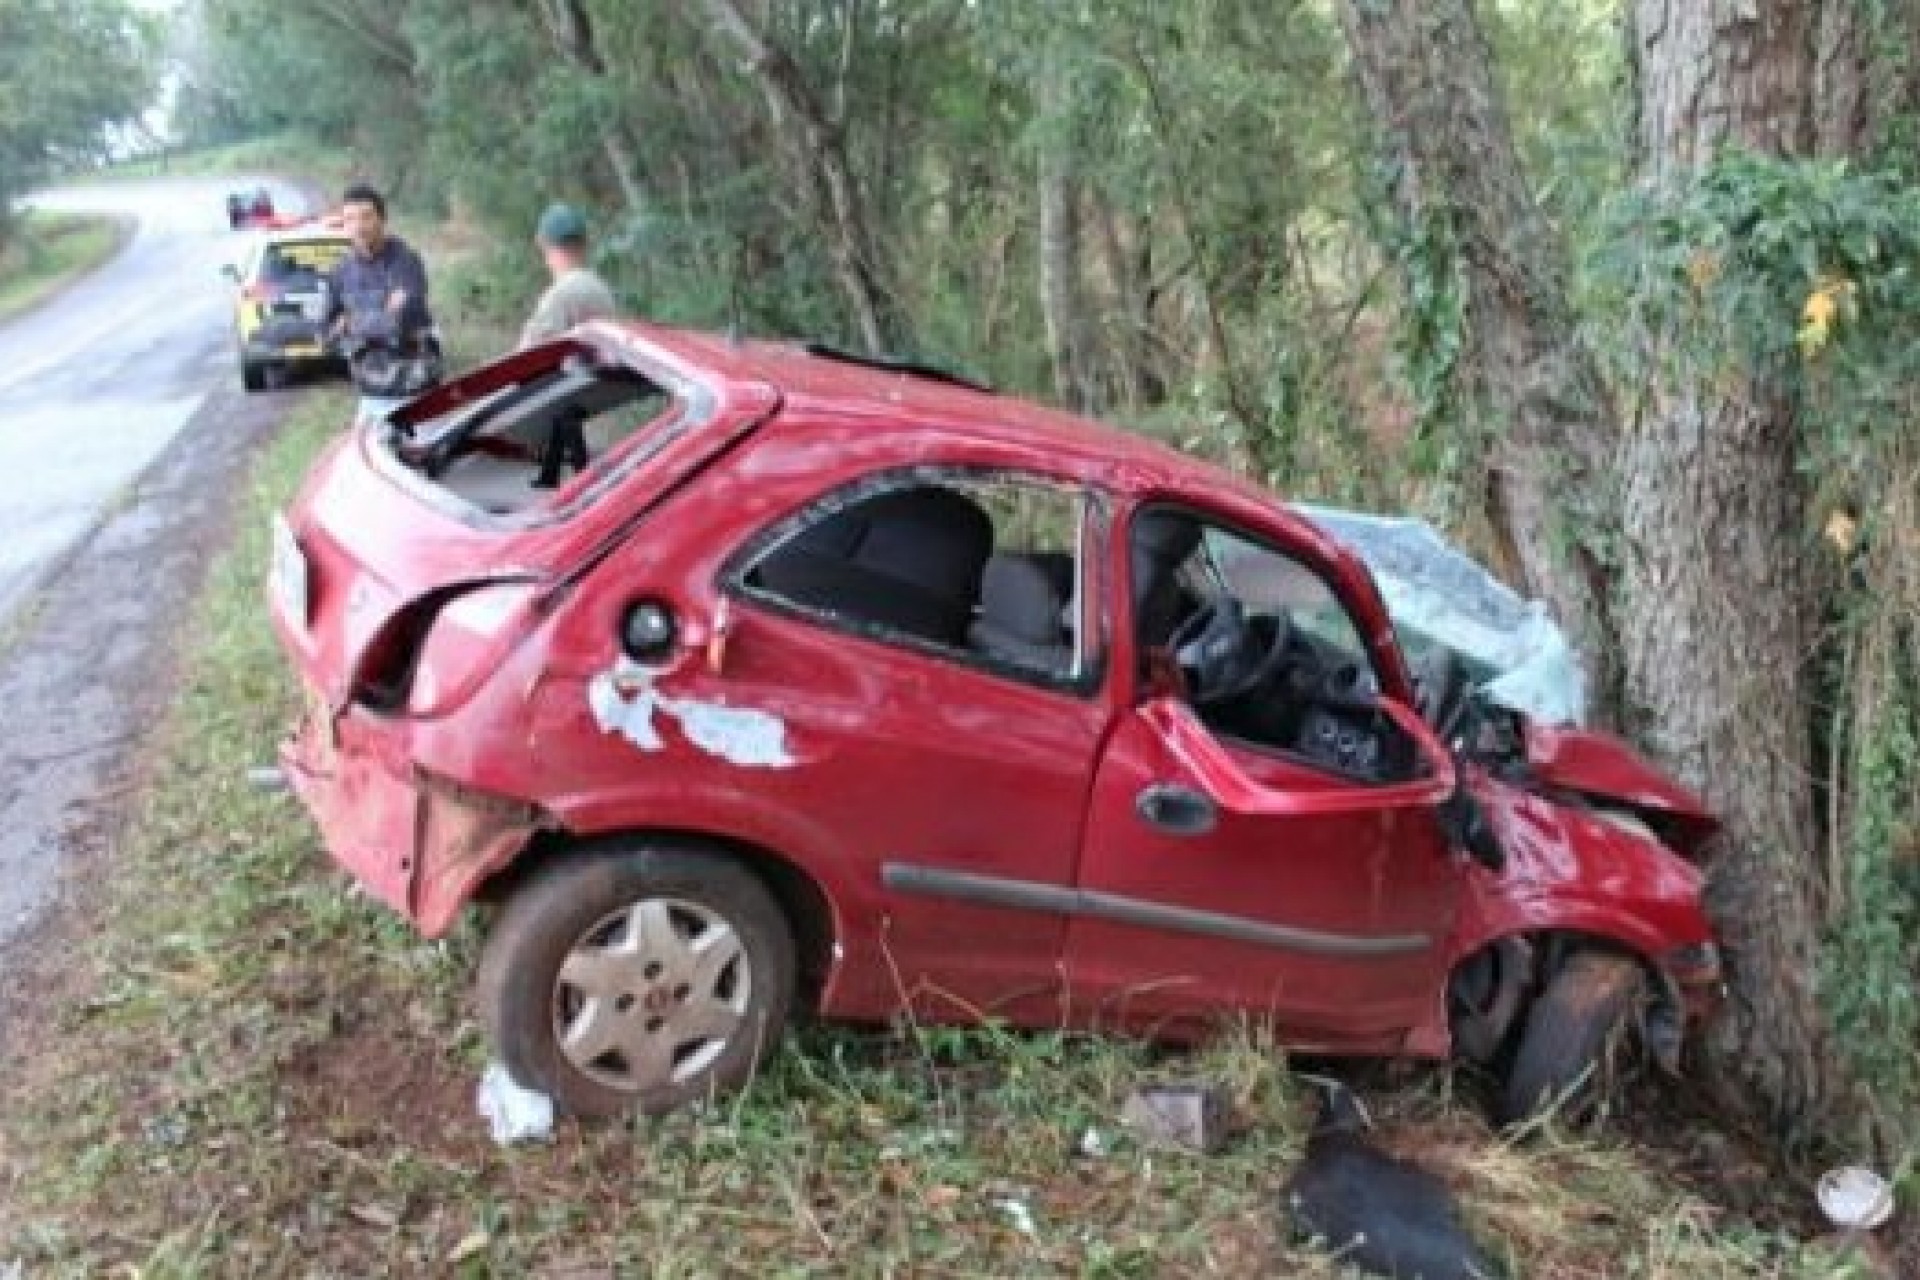 PRE apreende Celta e droga após perseguição entre Santa Helena e São José; condutor ficou ferido